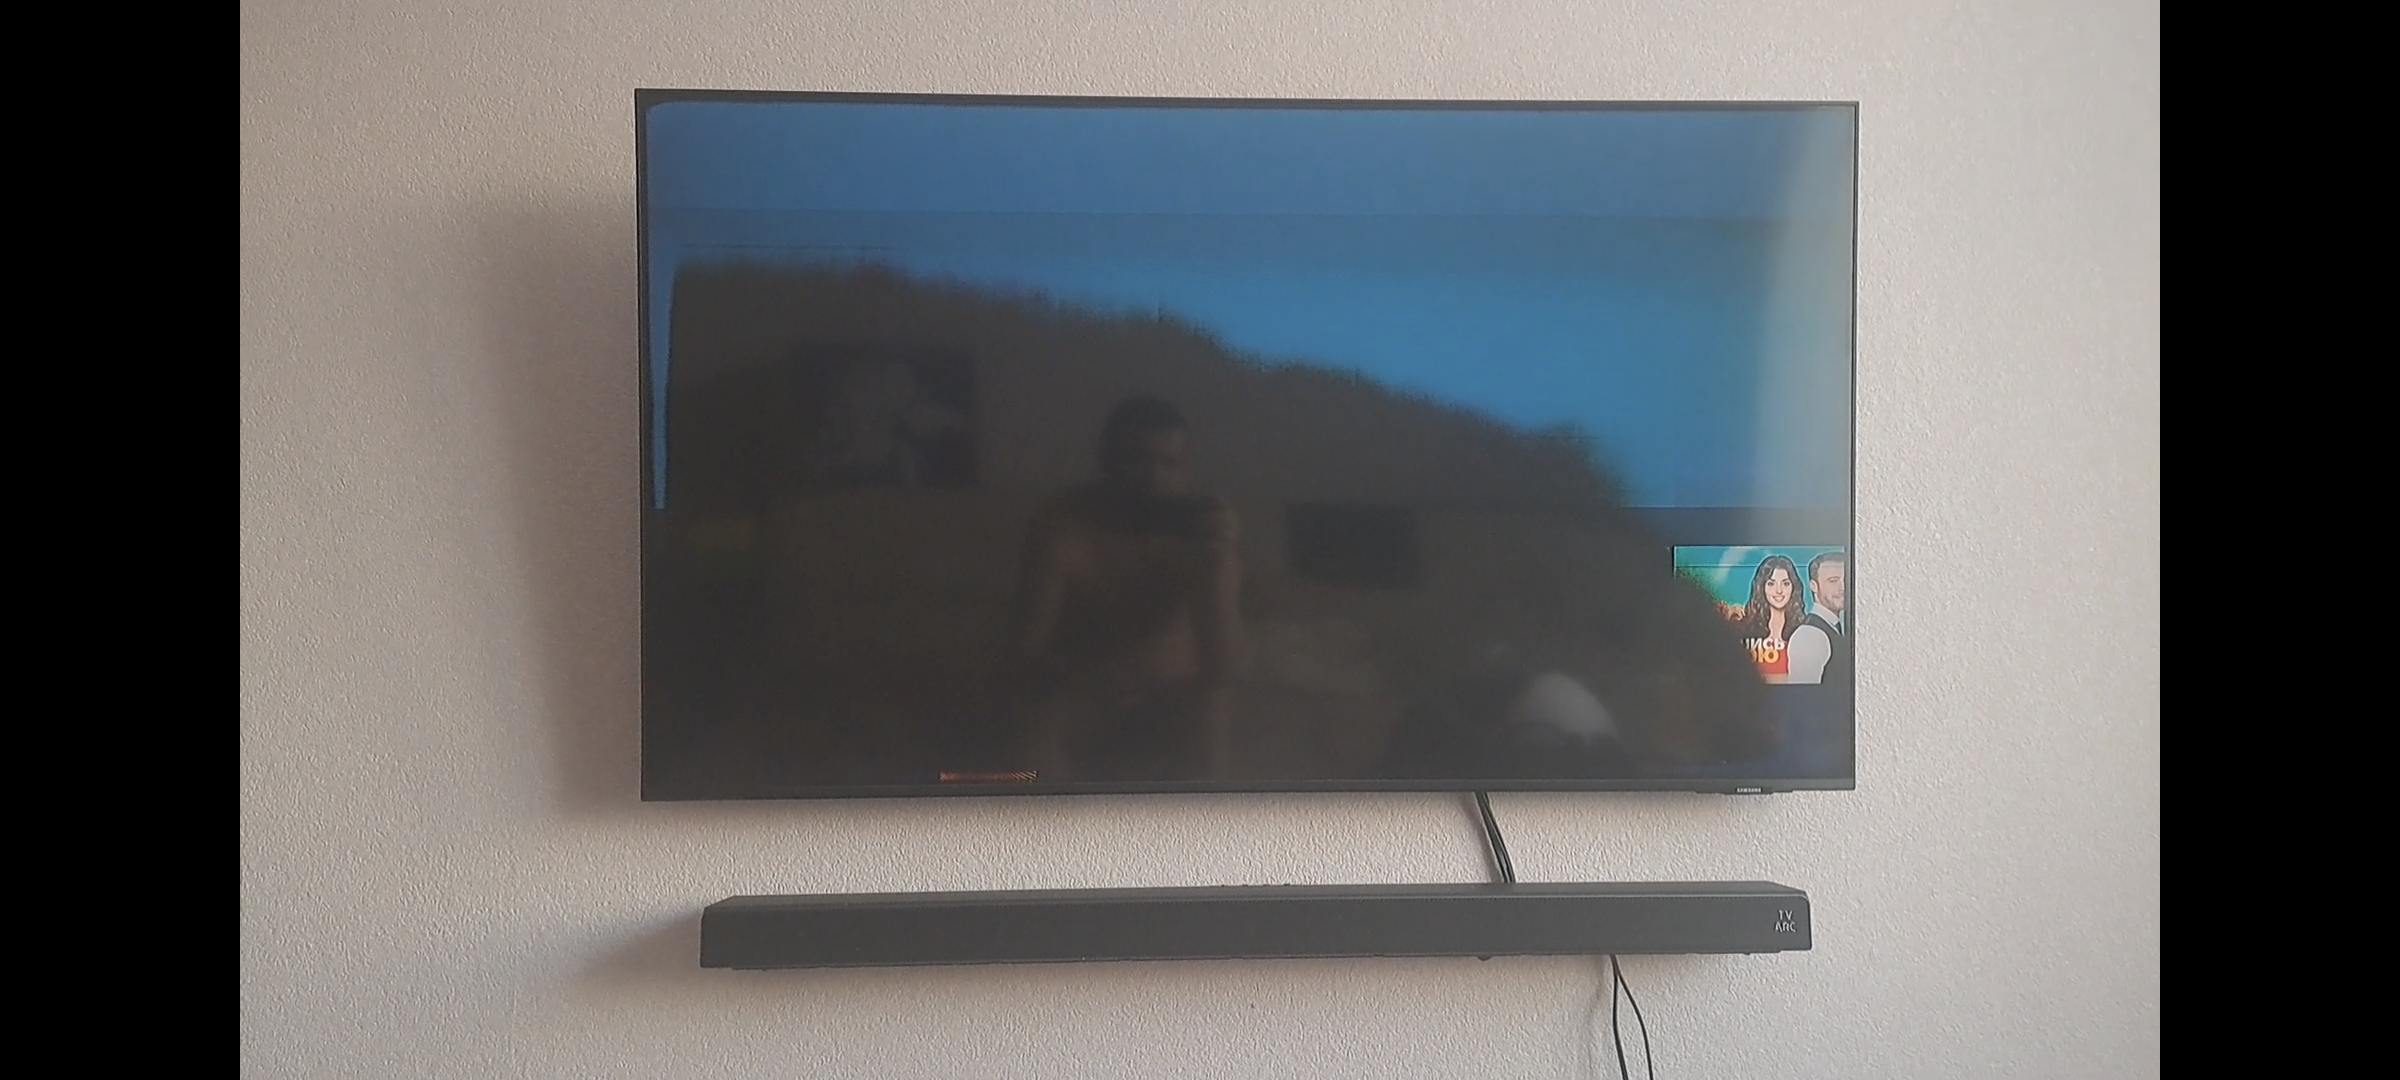 Почему чернеет экран. Потемнел экран телевизора. Половина телевизора потемнела. Темнеет экран. Монитор чернеет.